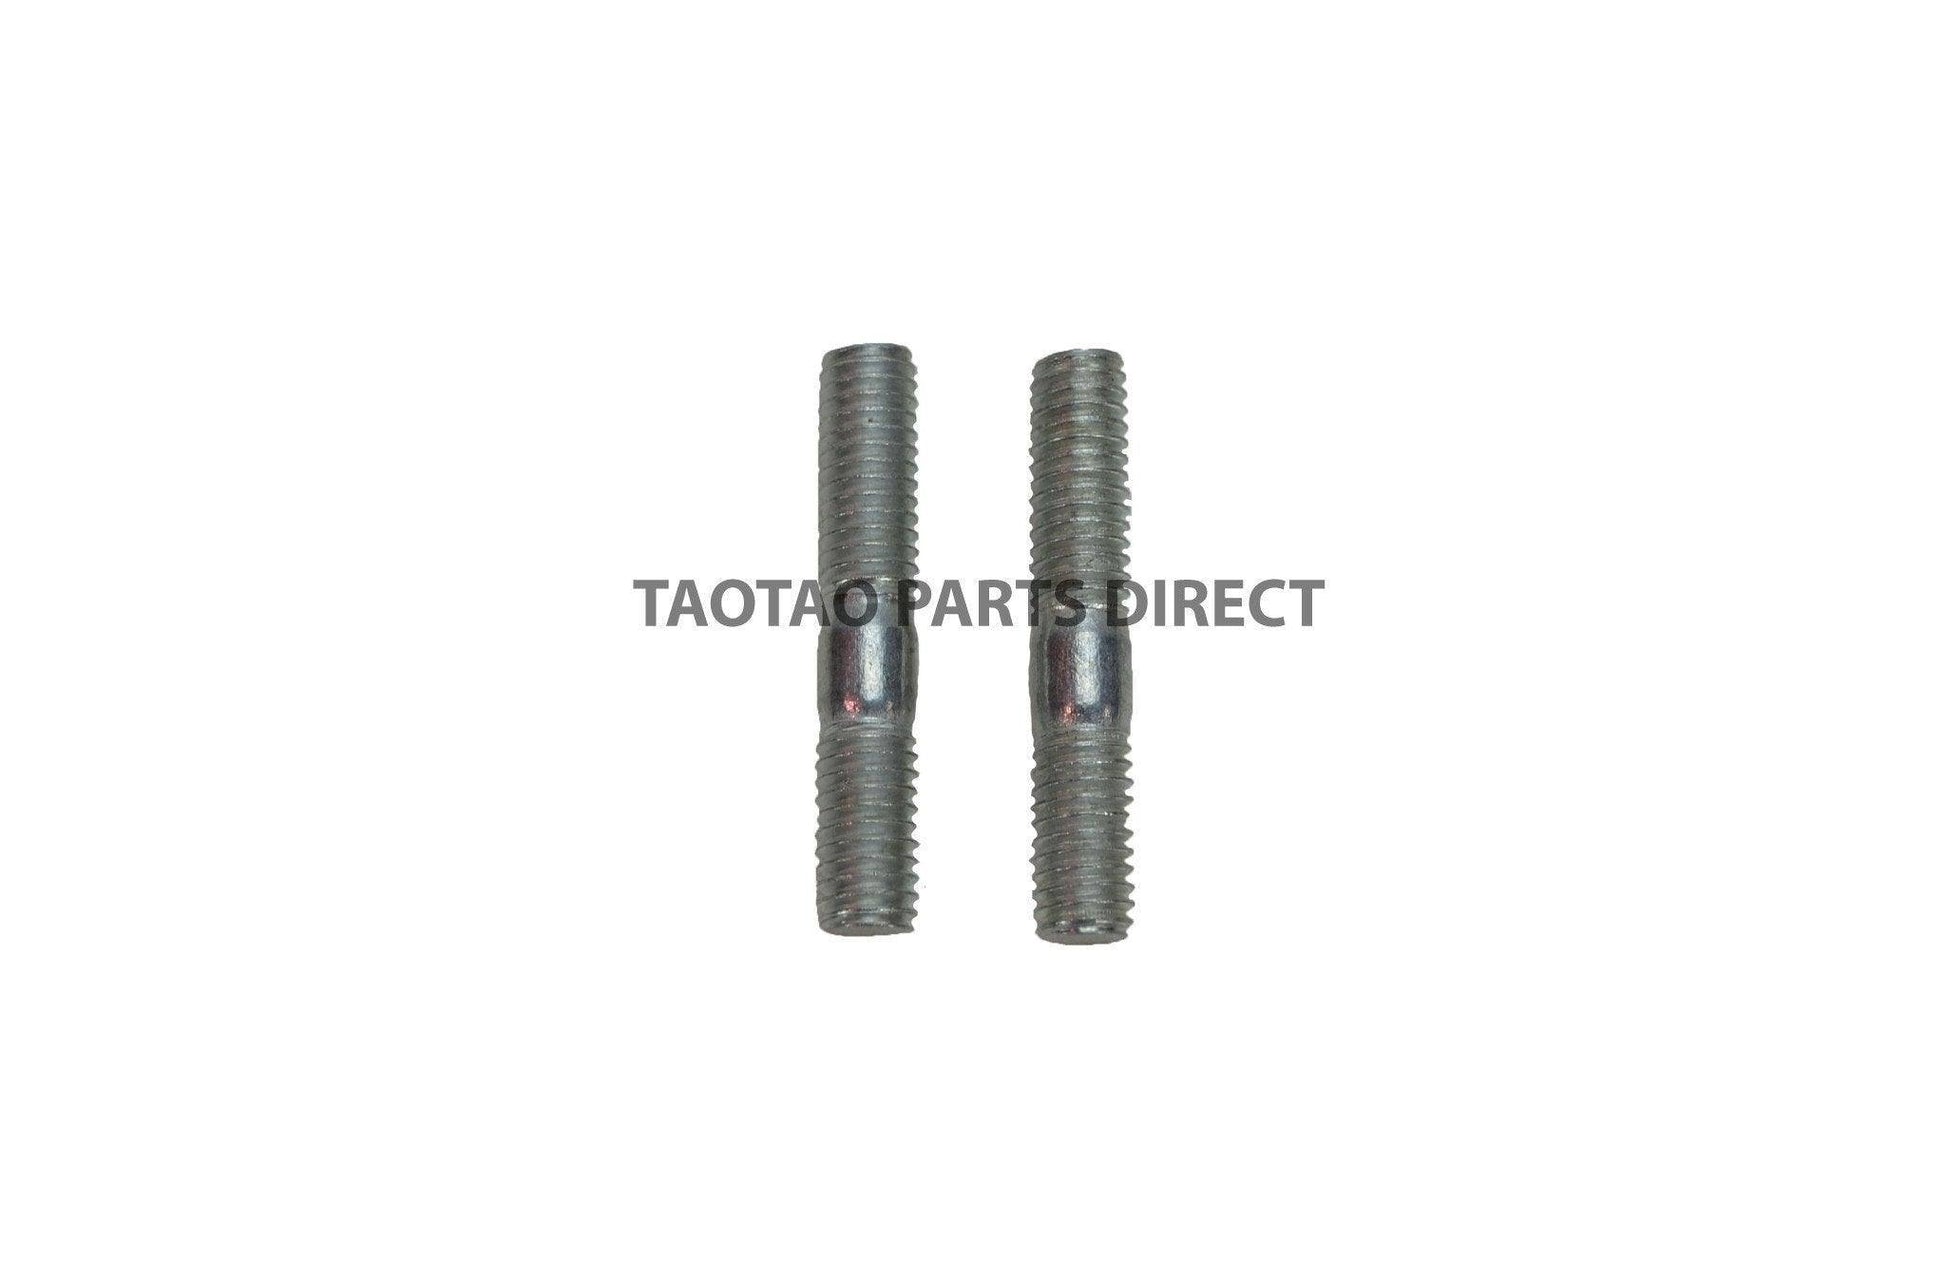 6mm Exhaust Studs - TaoTao Parts Direct